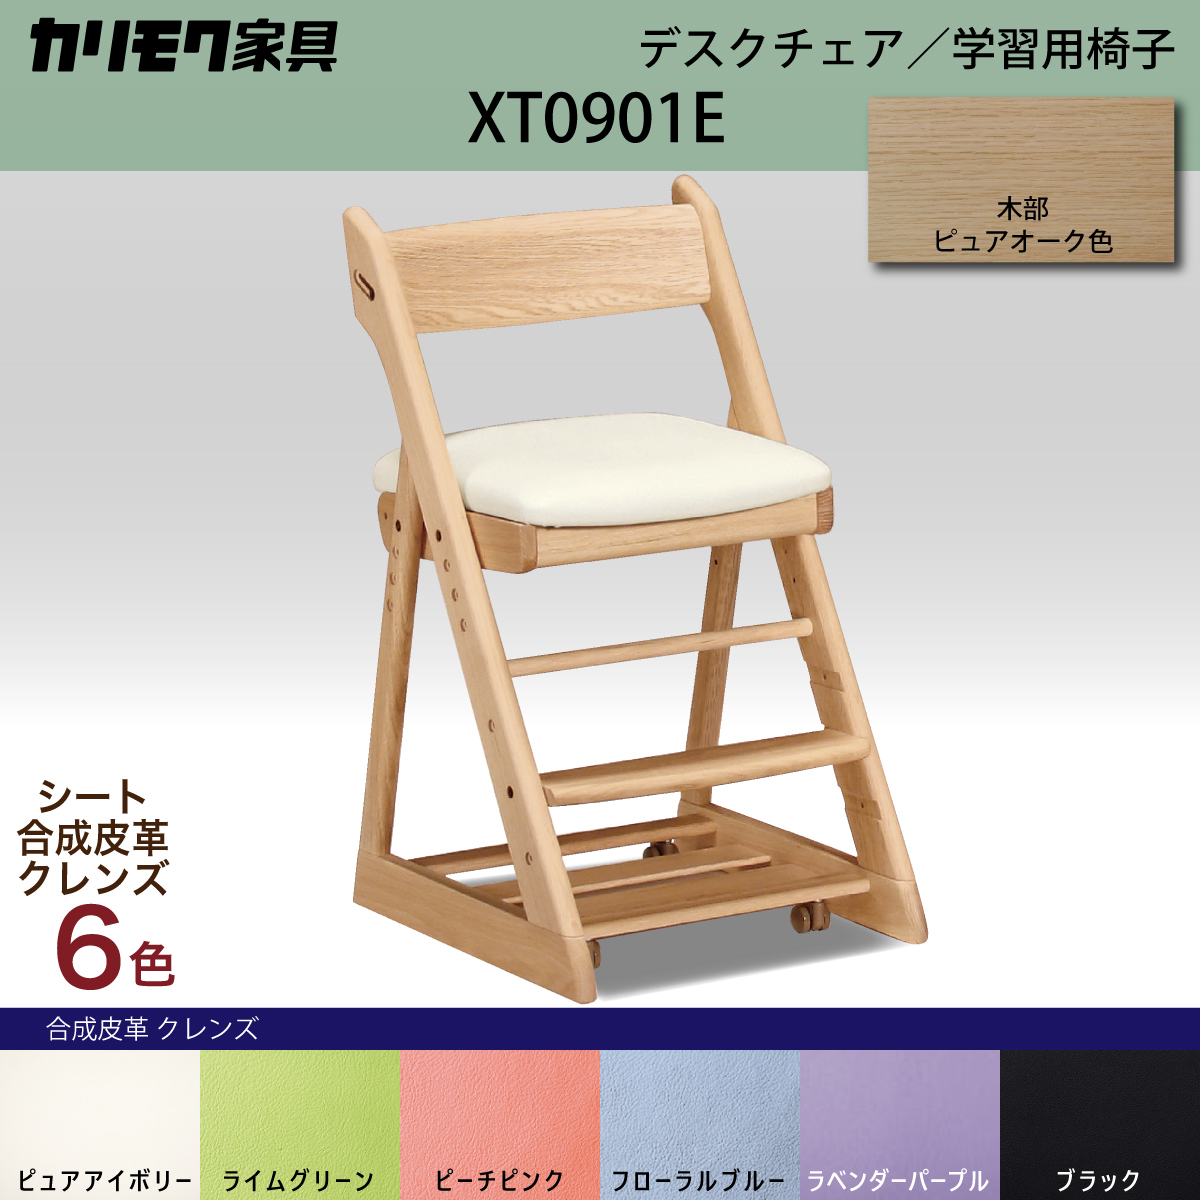 カリモク 学習椅子 おしゃれ XT0901 ピュアオーク色 オーク材 デスクチェア 子供椅子 キャスター付 安心安全 国産 karimoku